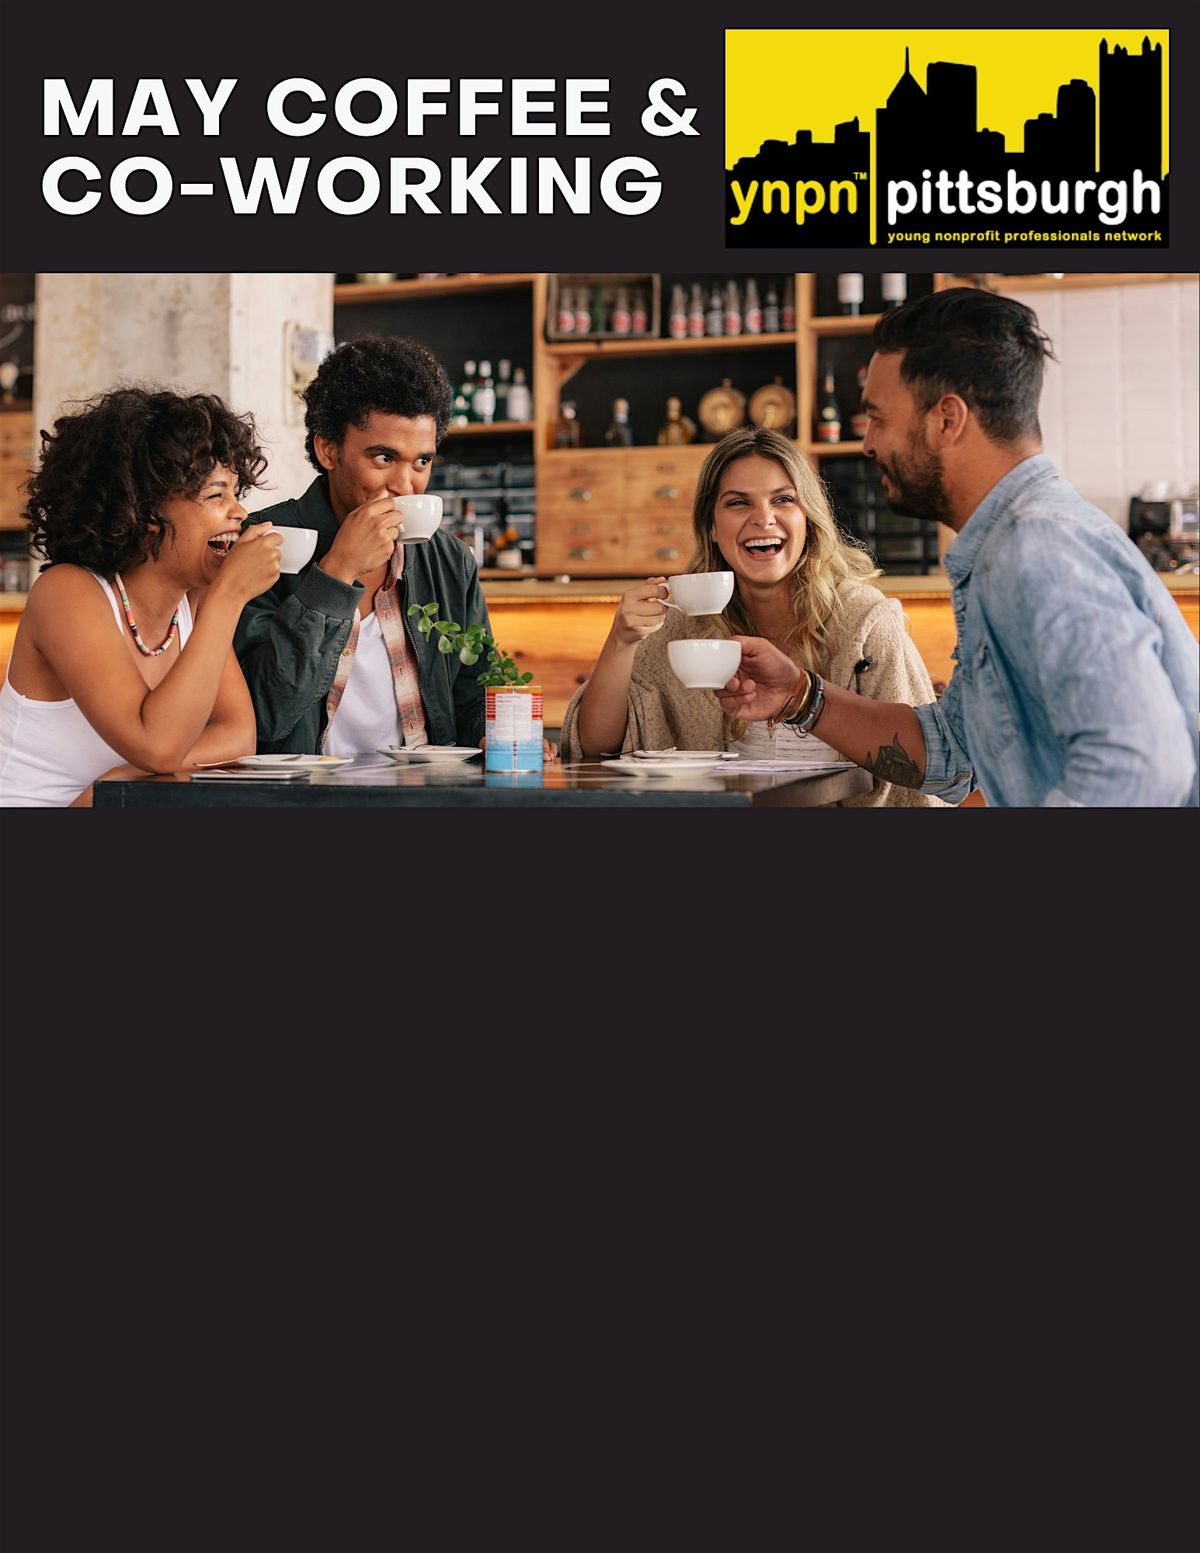 YNPN PGH Coffee & Co-Working Meet up